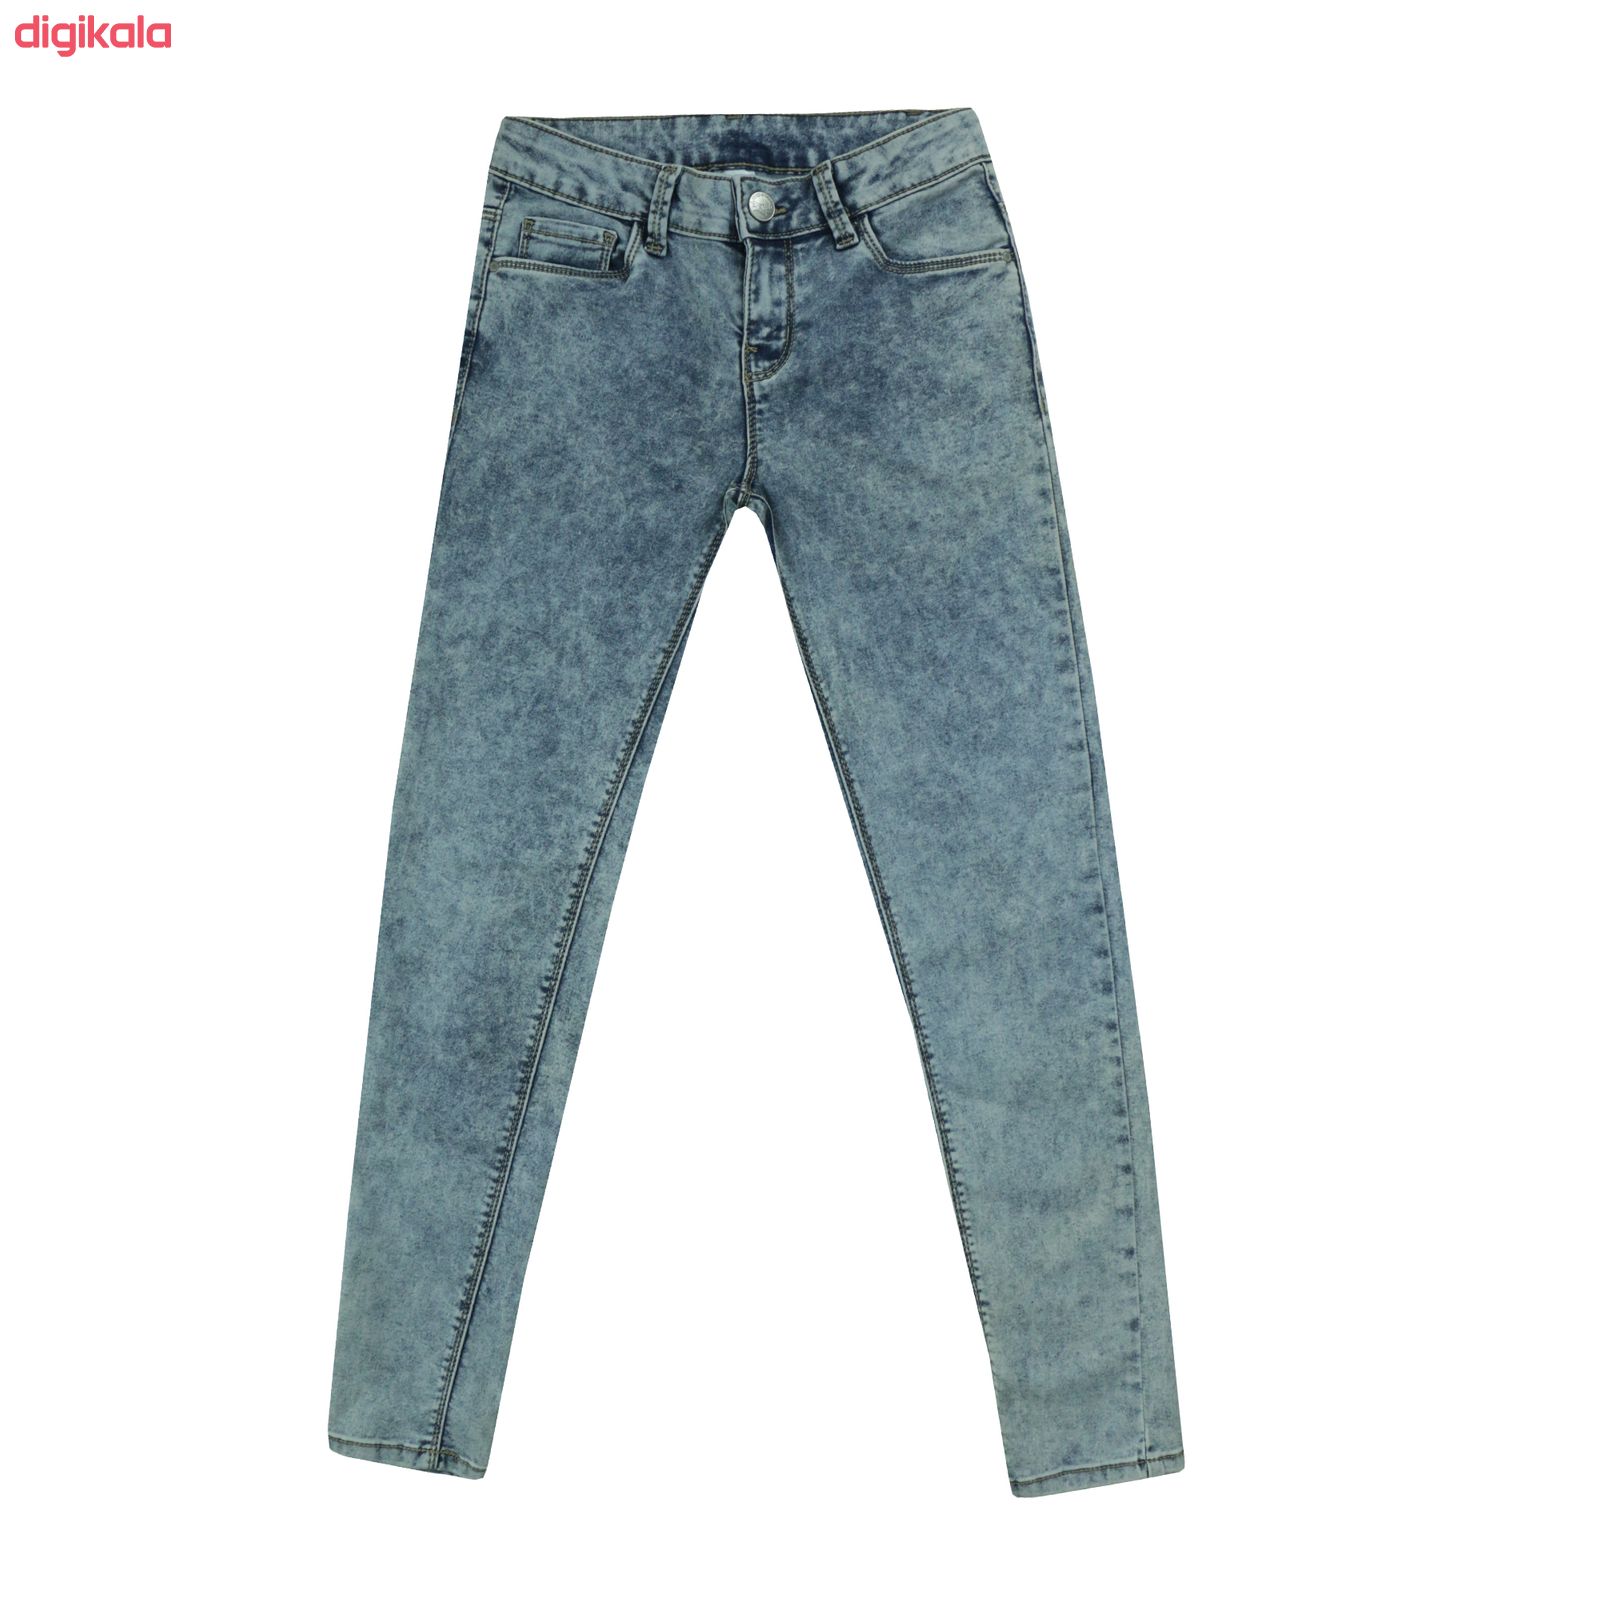  خرید اینترنتی با تخفیف ویژه شلوار جین زنانه مدل G170